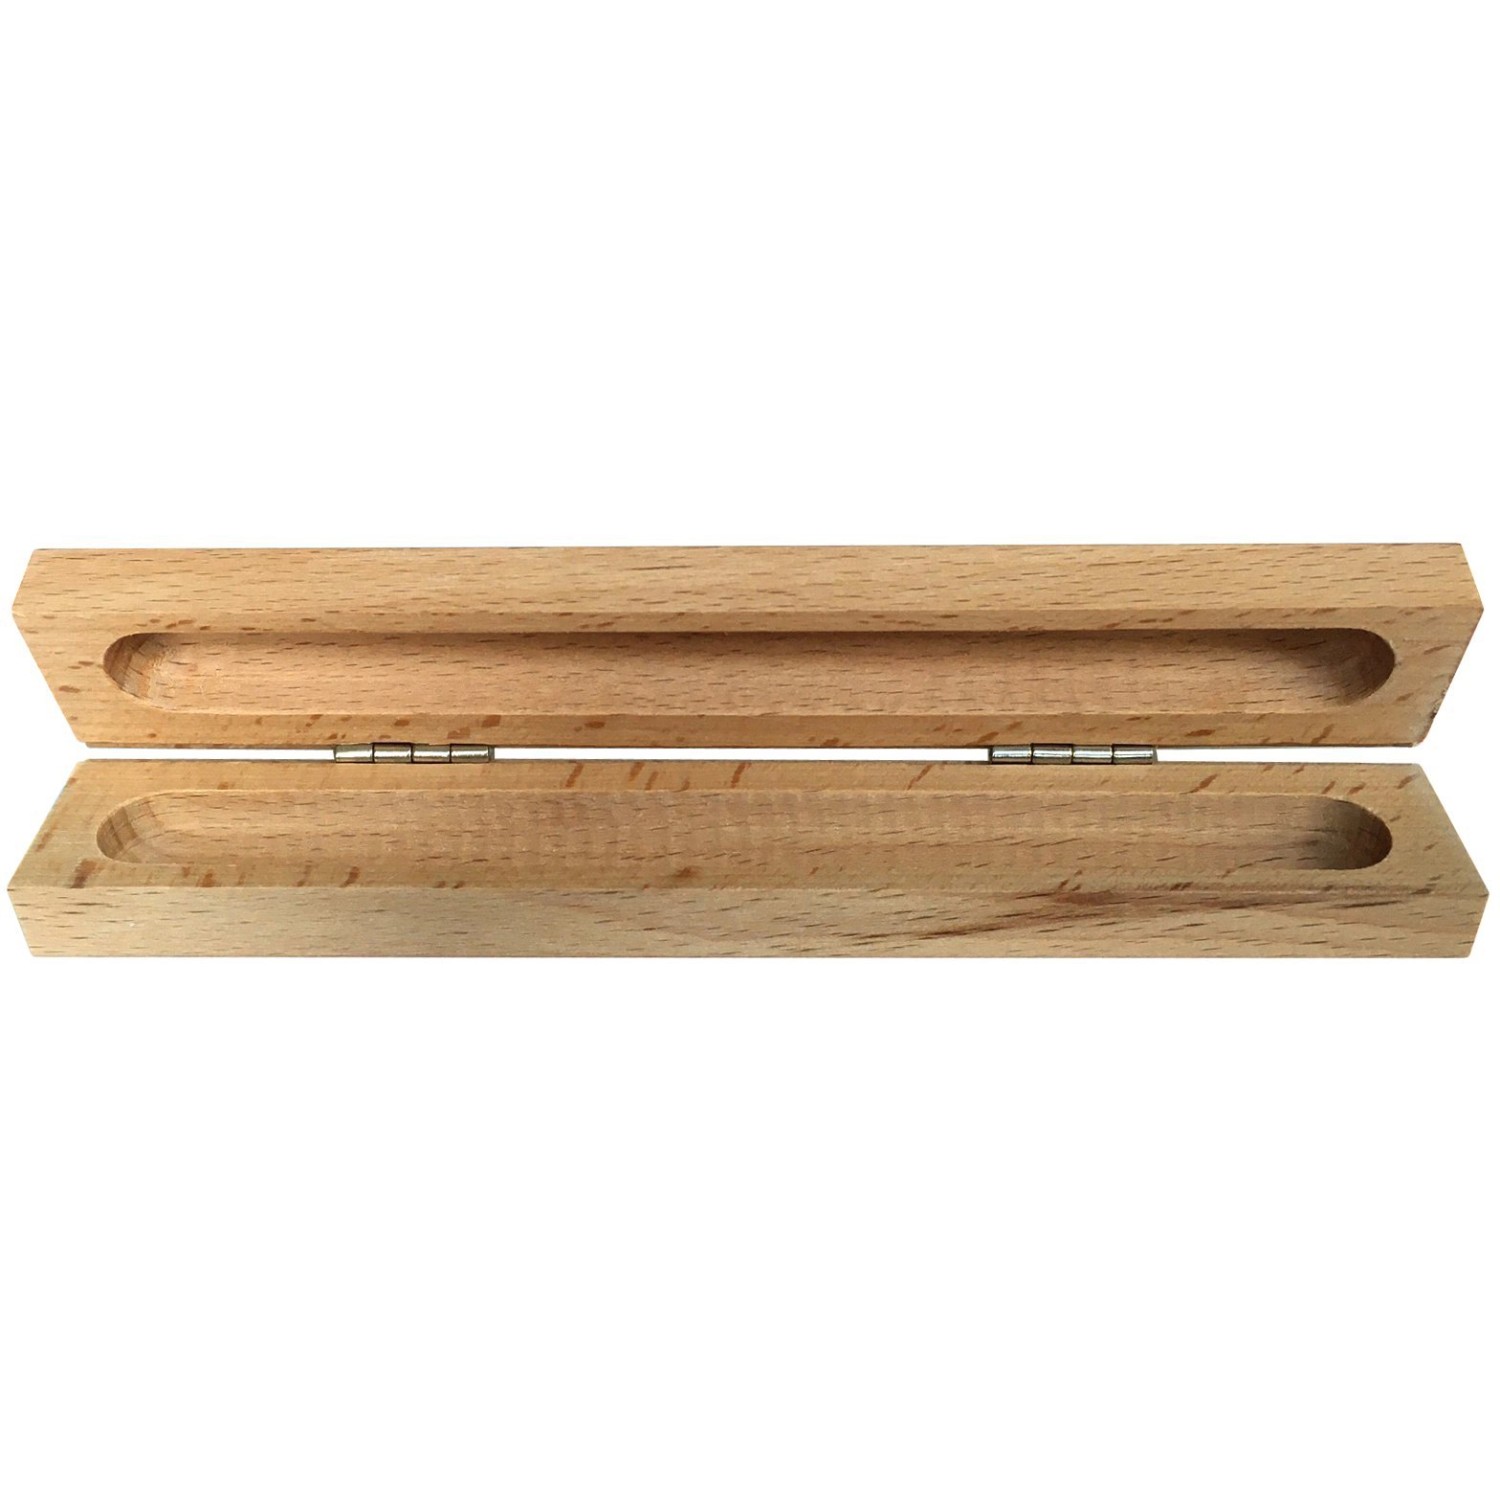 Holz-Etui für Kugelschreiber 17 cm x 2,5 cm x 2 cm